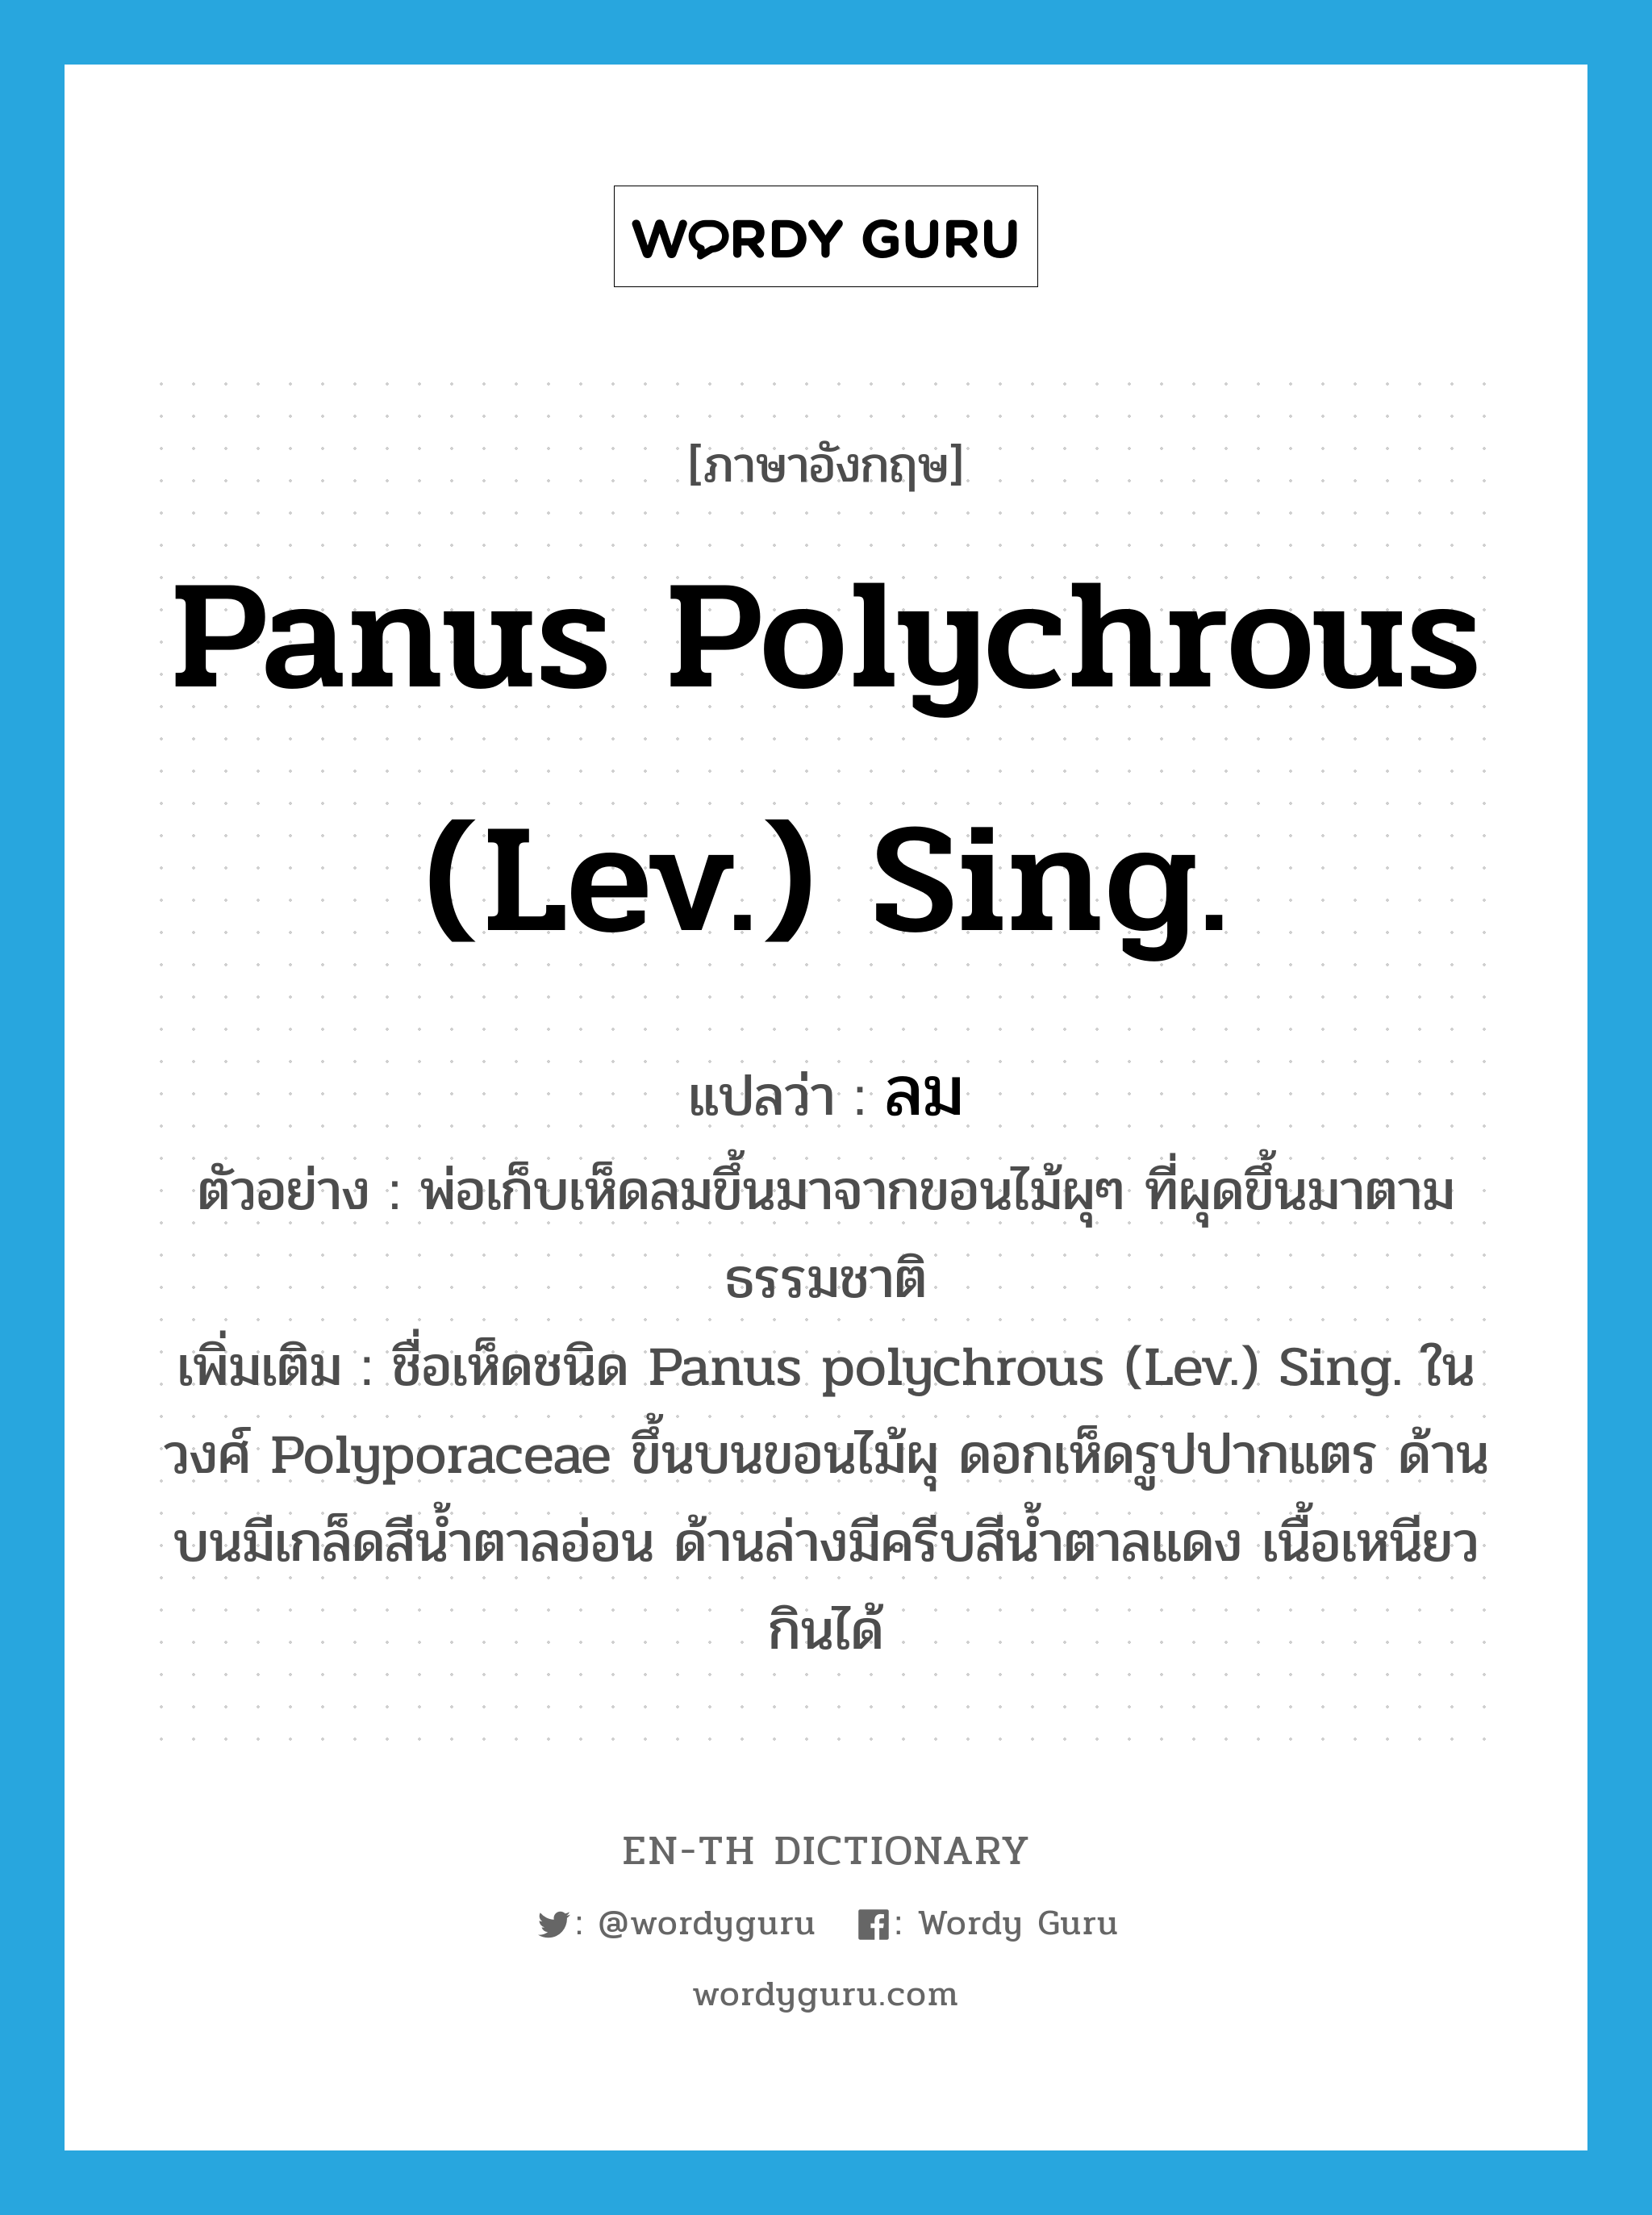 Panus polychrous (Lev.) Sing. แปลว่า?, คำศัพท์ภาษาอังกฤษ Panus polychrous (Lev.) Sing. แปลว่า ลม ประเภท N ตัวอย่าง พ่อเก็บเห็ดลมขึ้นมาจากขอนไม้ผุๆ ที่ผุดขึ้นมาตามธรรมชาติ เพิ่มเติม ชื่อเห็ดชนิด Panus polychrous (Lev.) Sing. ในวงศ์ Polyporaceae ขึ้นบนขอนไม้ผุ ดอกเห็ดรูปปากแตร ด้านบนมีเกล็ดสีน้ำตาลอ่อน ด้านล่างมีครีบสีน้ำตาลแดง เนื้อเหนียว กินได้ หมวด N